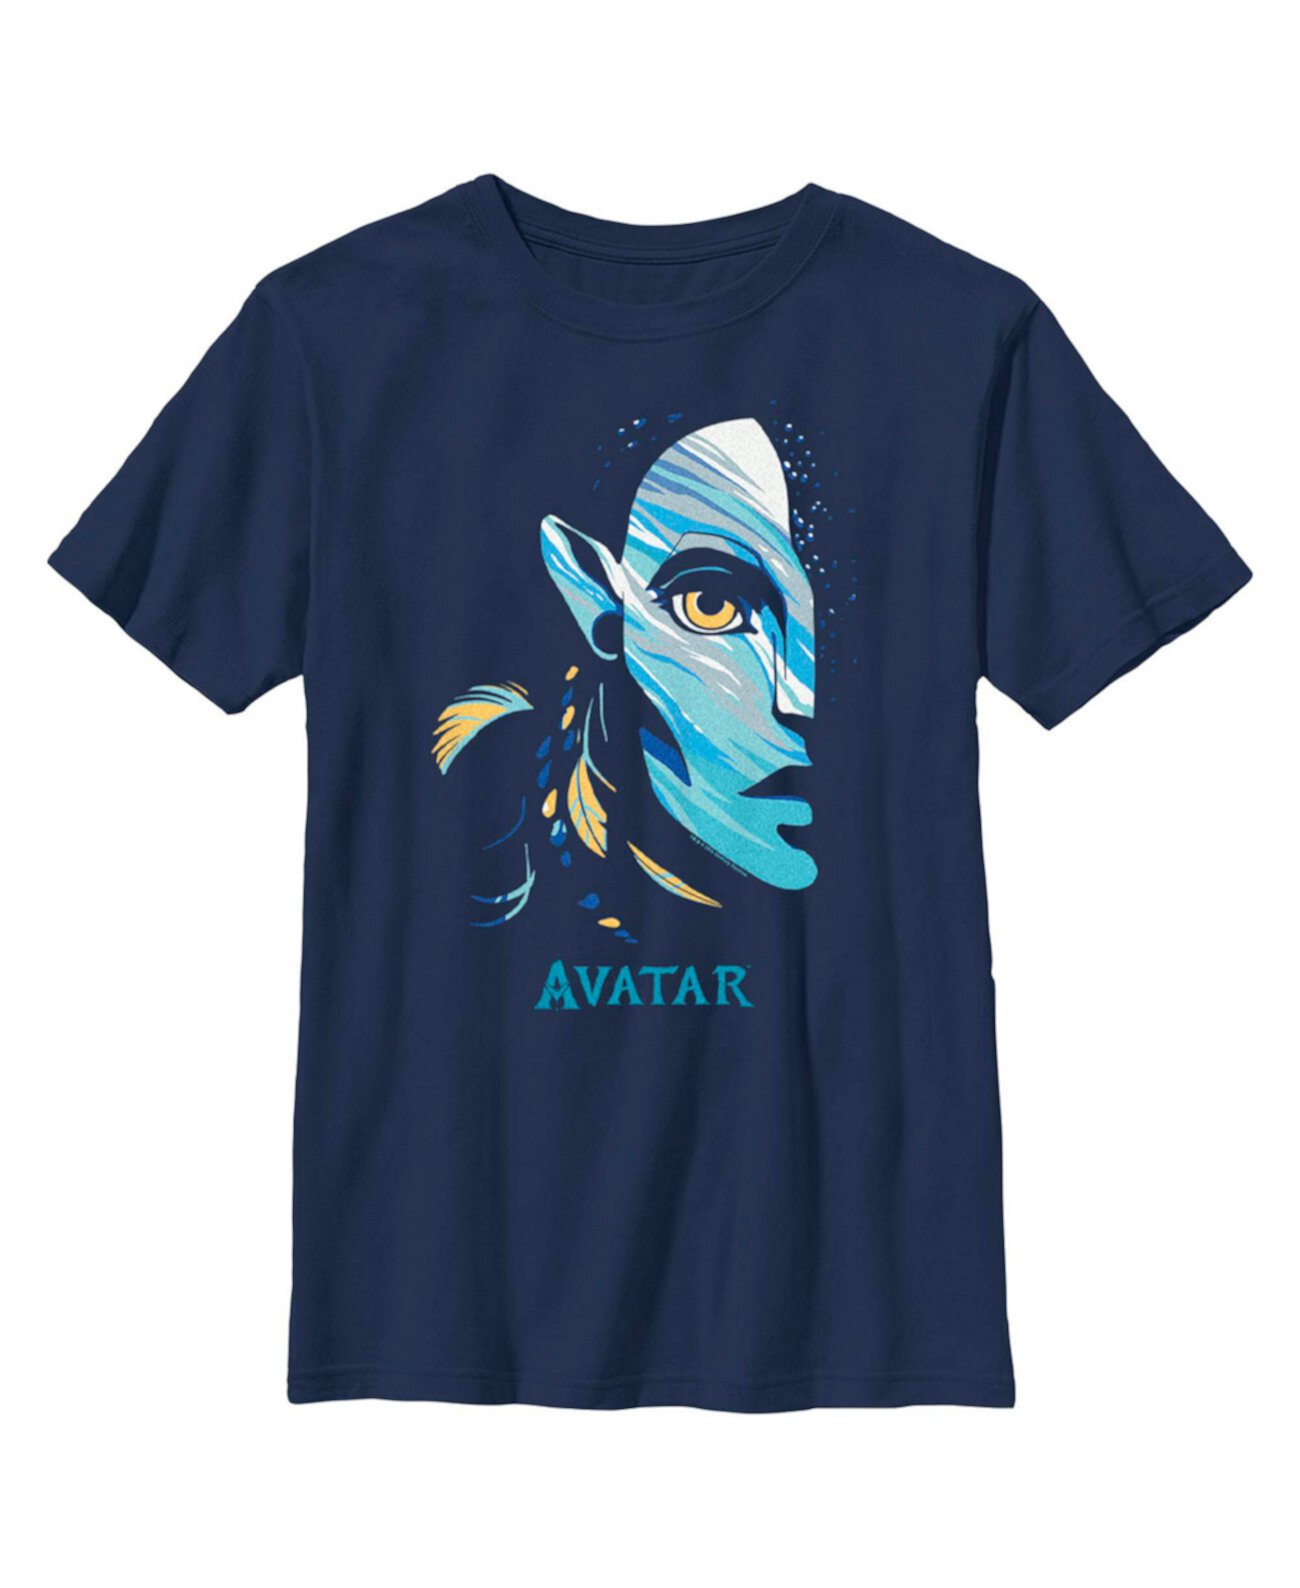 Детская футболка с логотипом «Аватар для мальчика: Путь воды» Нейтири 20th Century Fox